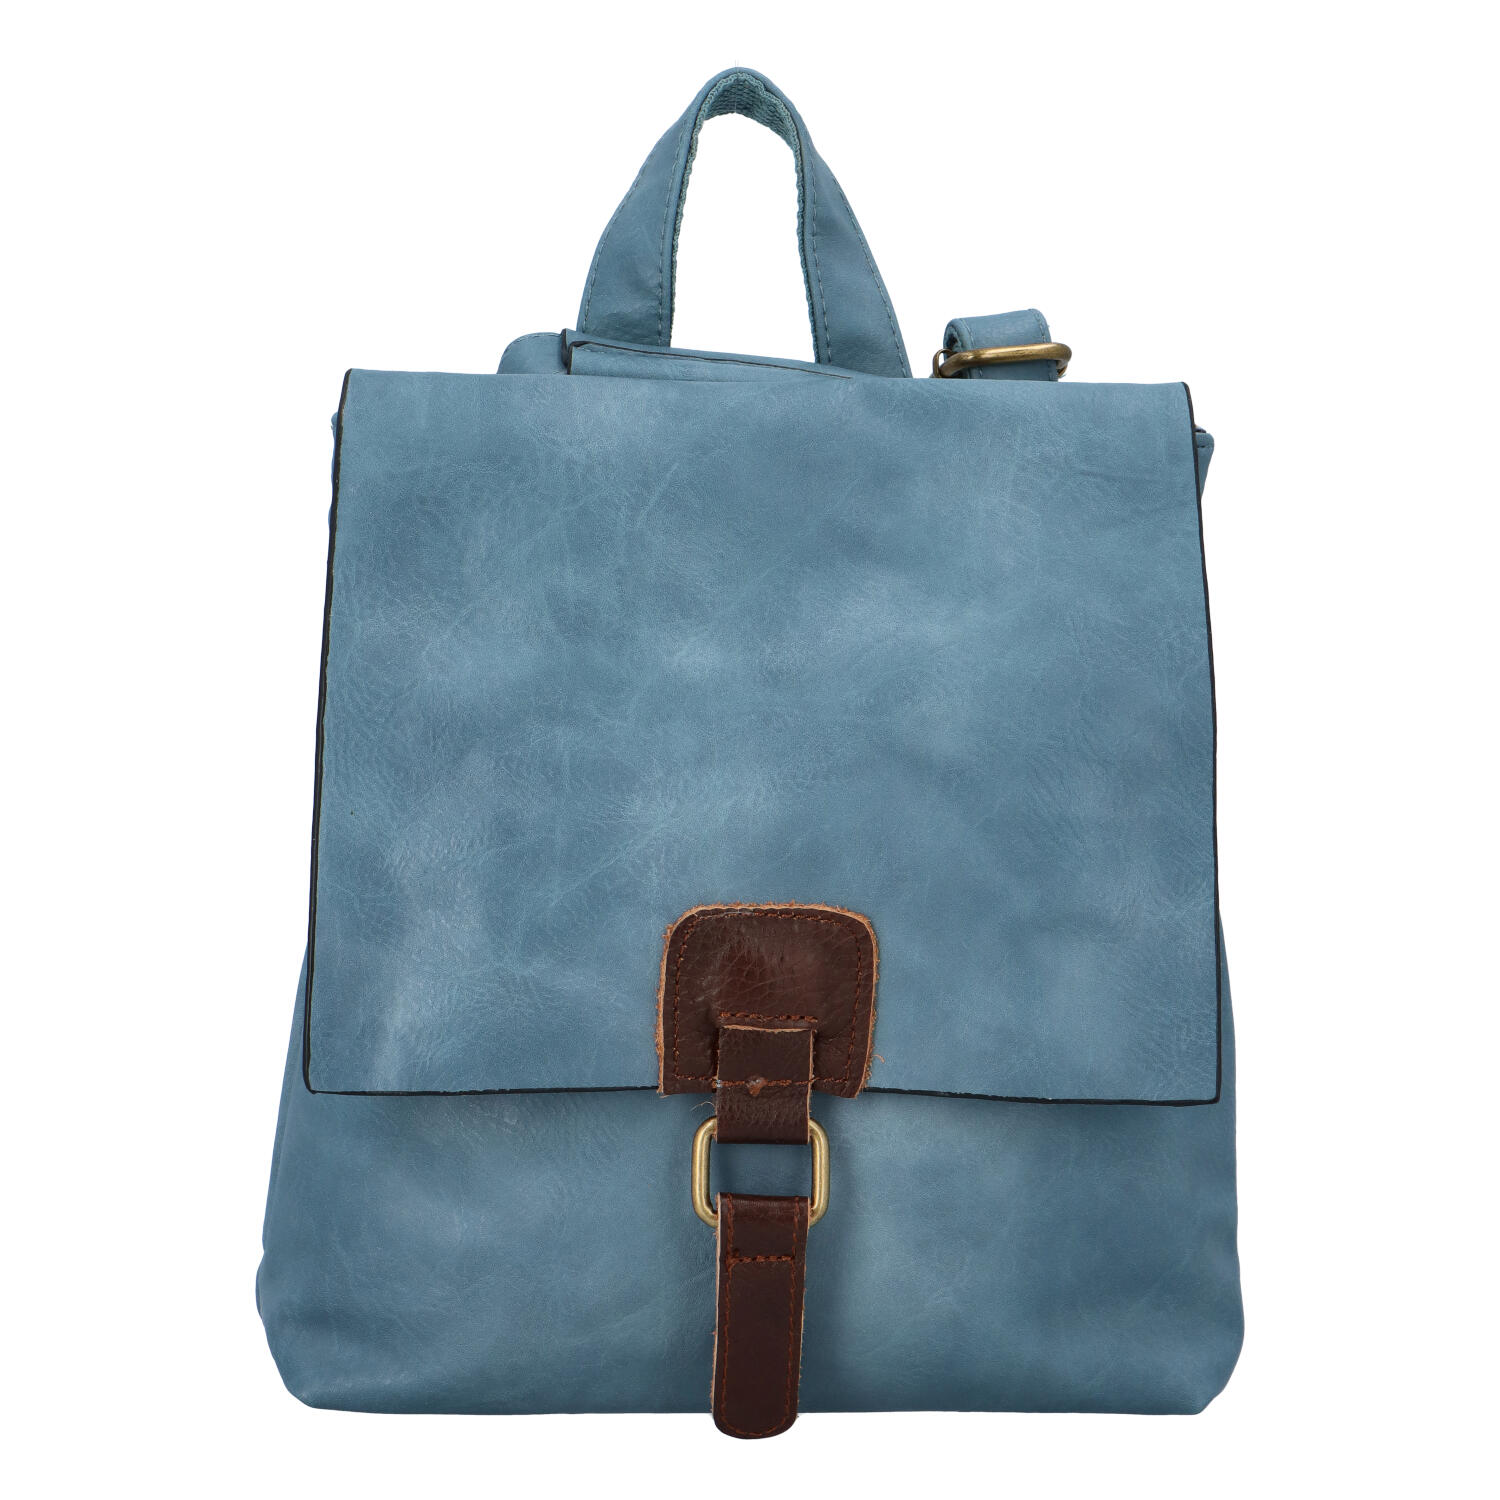 Dámsky batôžtek kabelka svetlo modrý - Paolo Bags Najibu modrá